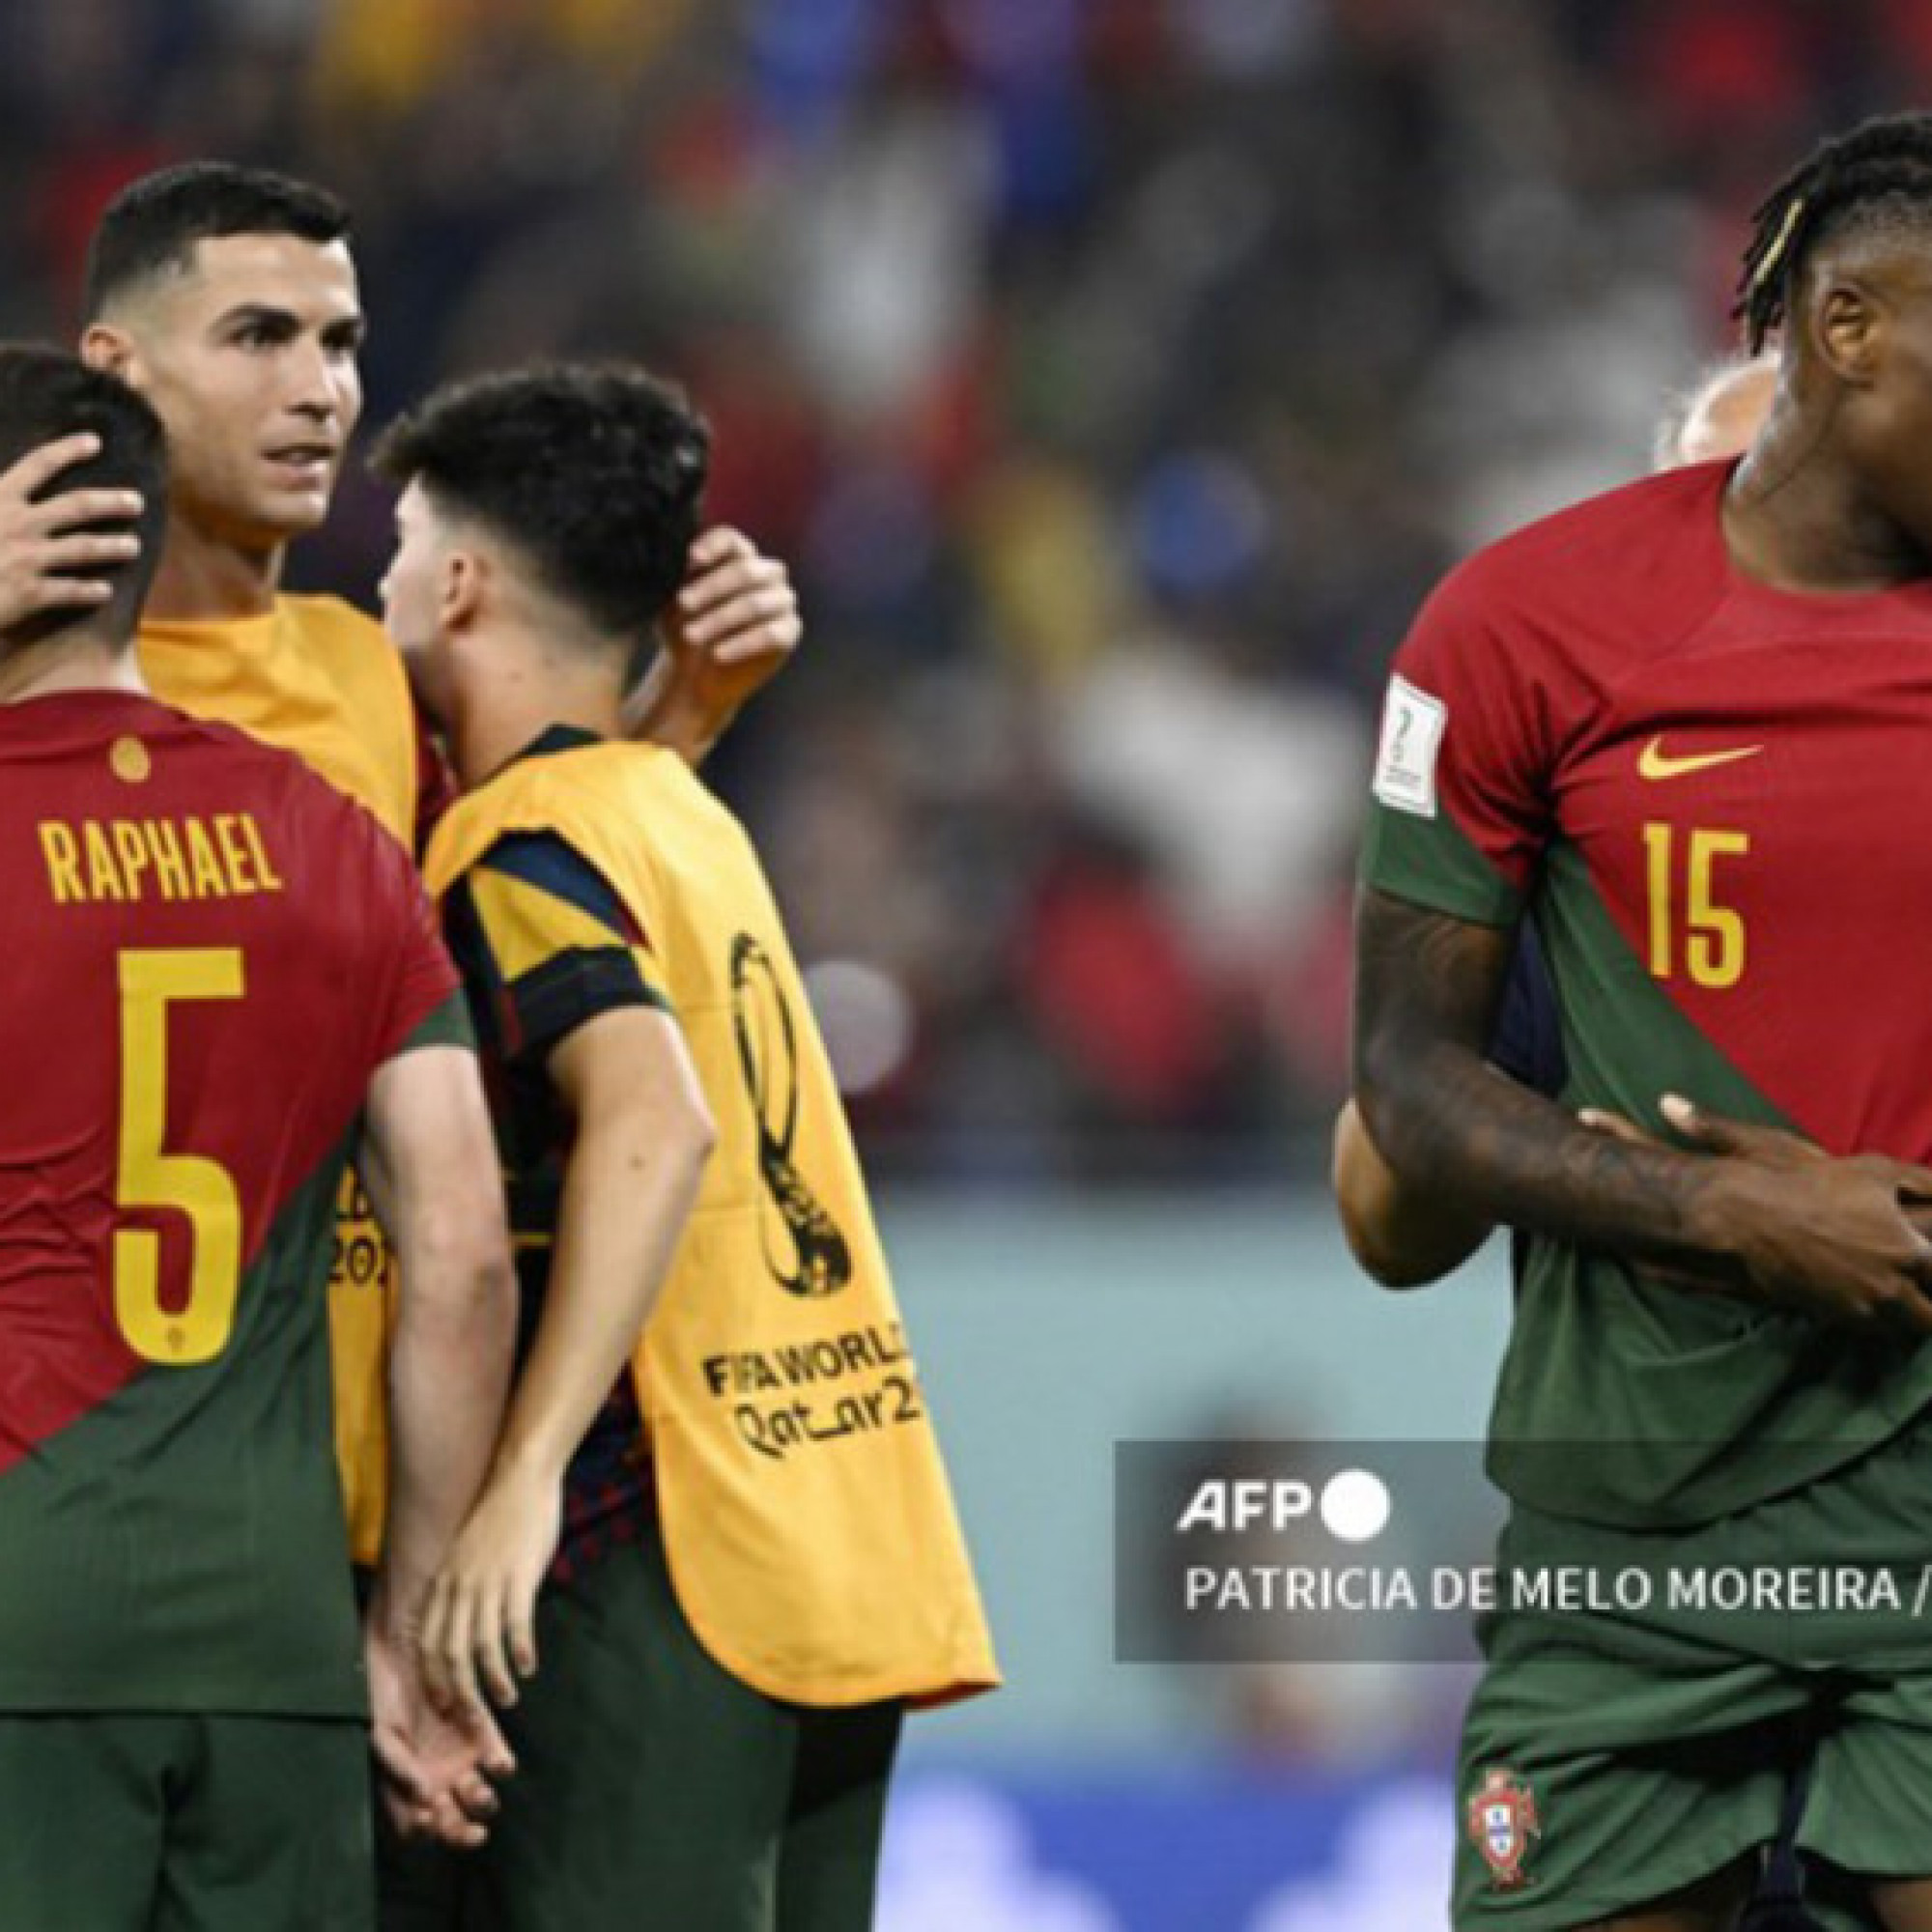 Thể thao - Trực tiếp bóng đá Bồ Đào Nha - Ghana: Bảo toàn cách biệt mong manh (World Cup) (Hết giờ)